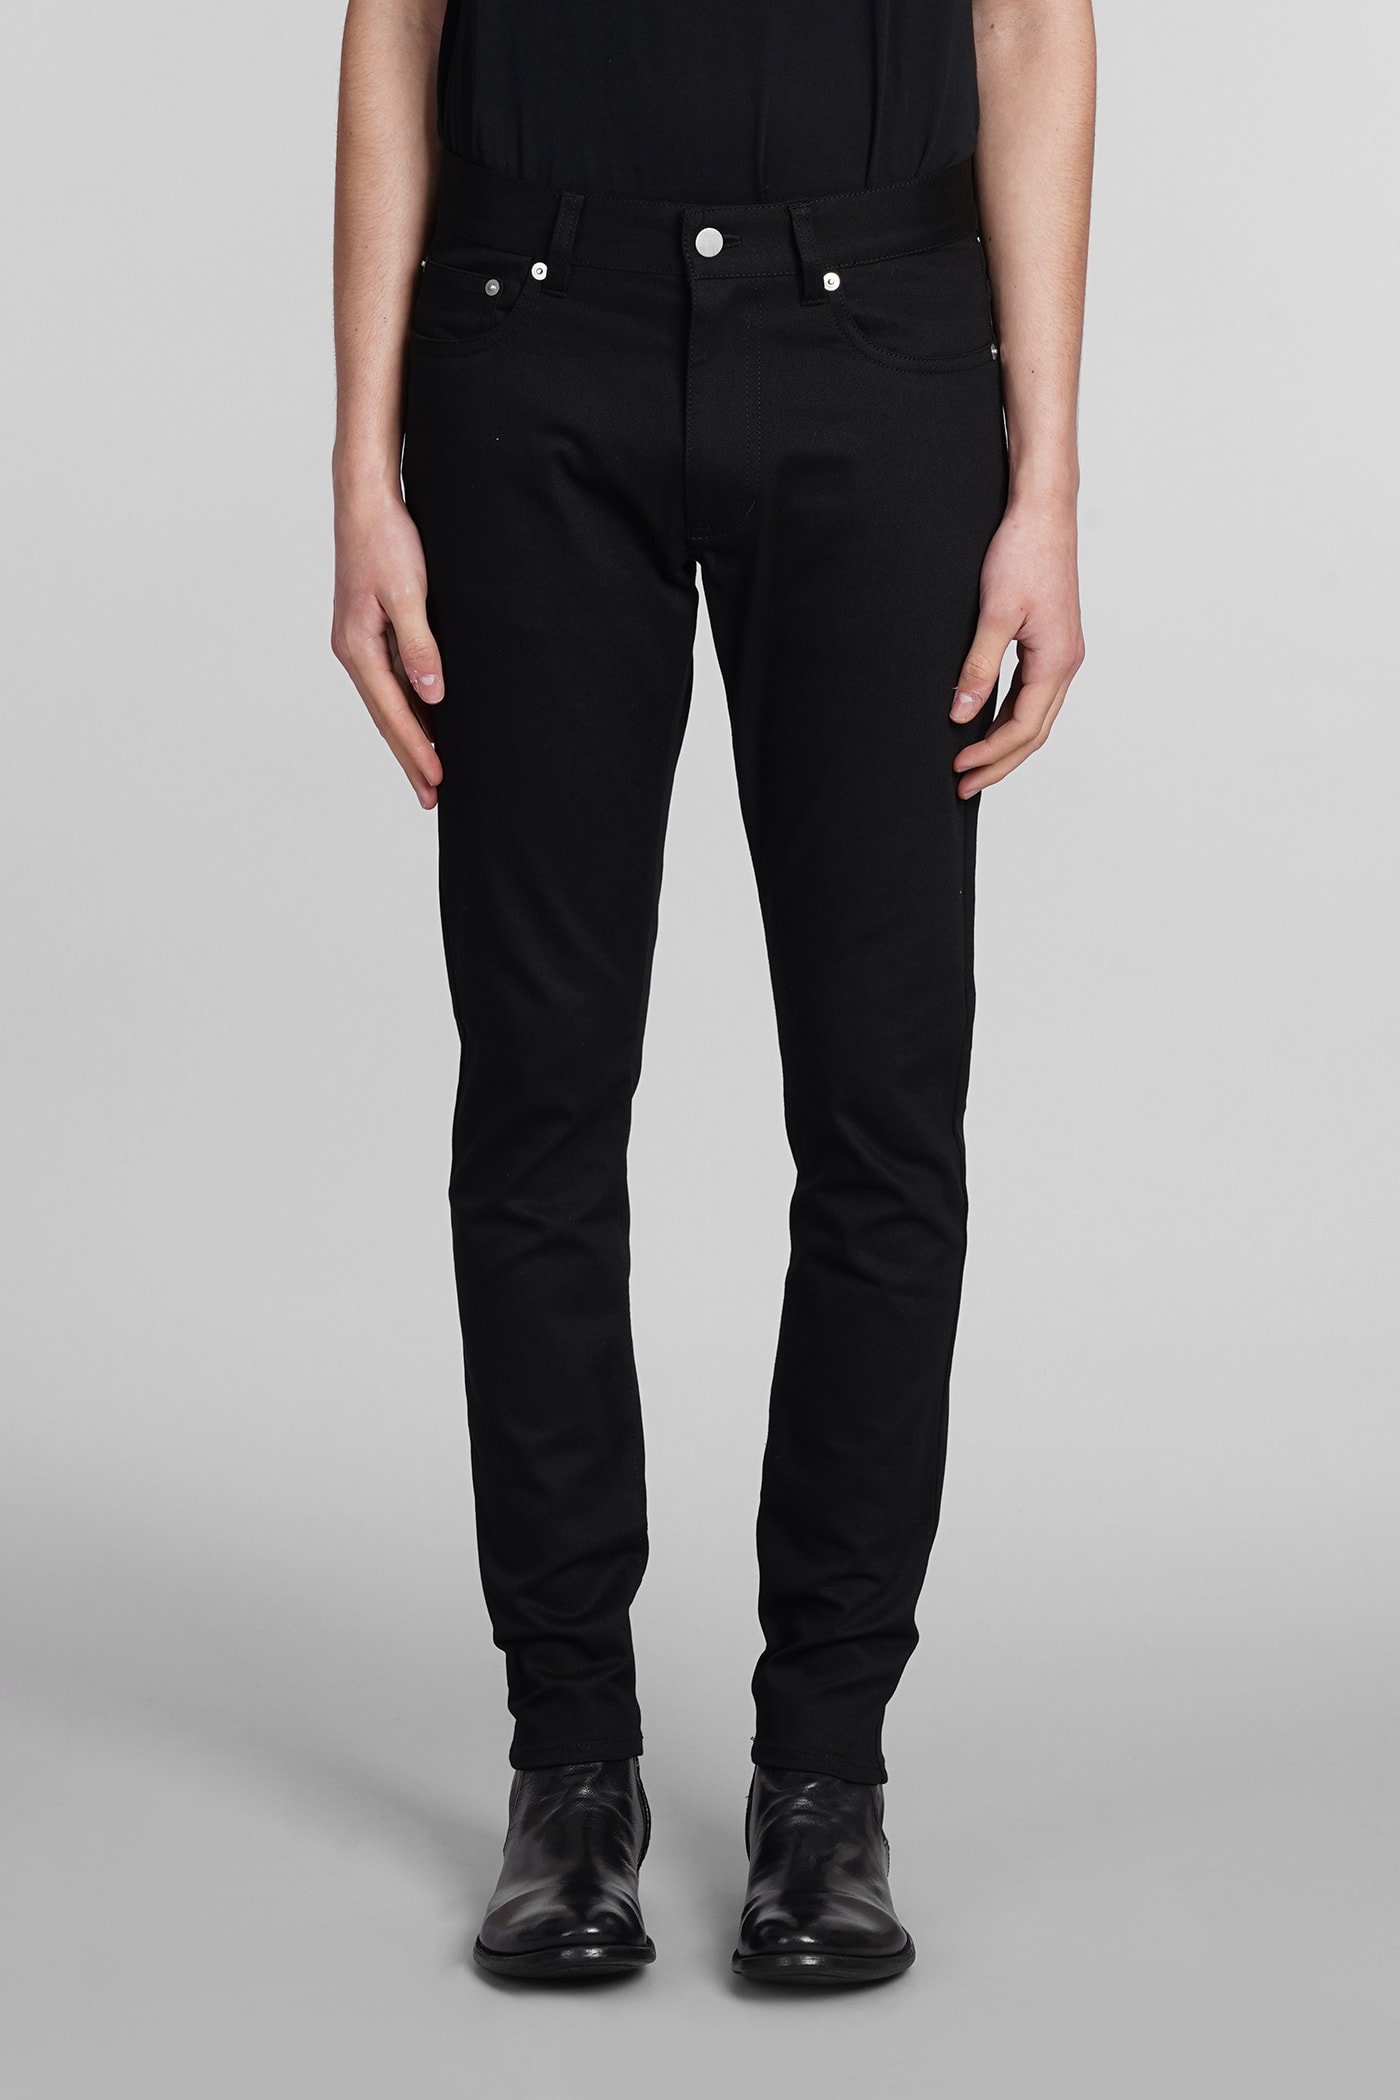 Attachment Trousers In Black Cotton